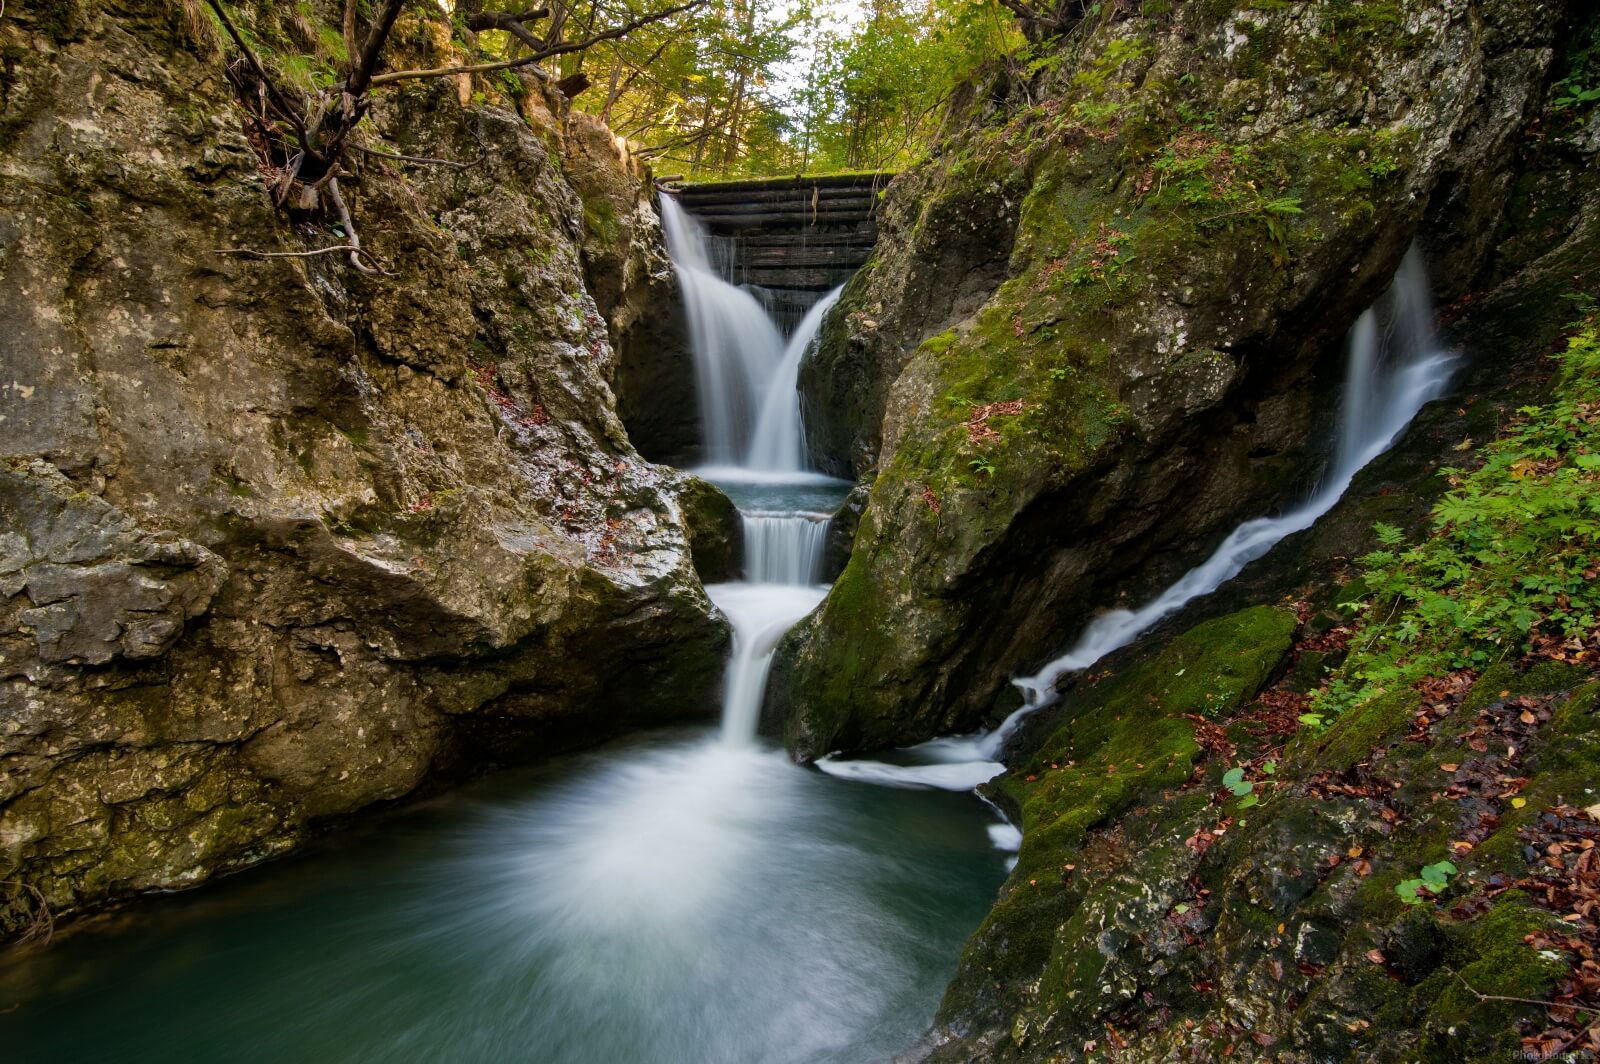 Image of Brdarjev Slap (Brdar Waterfall) by Andrija Majsen